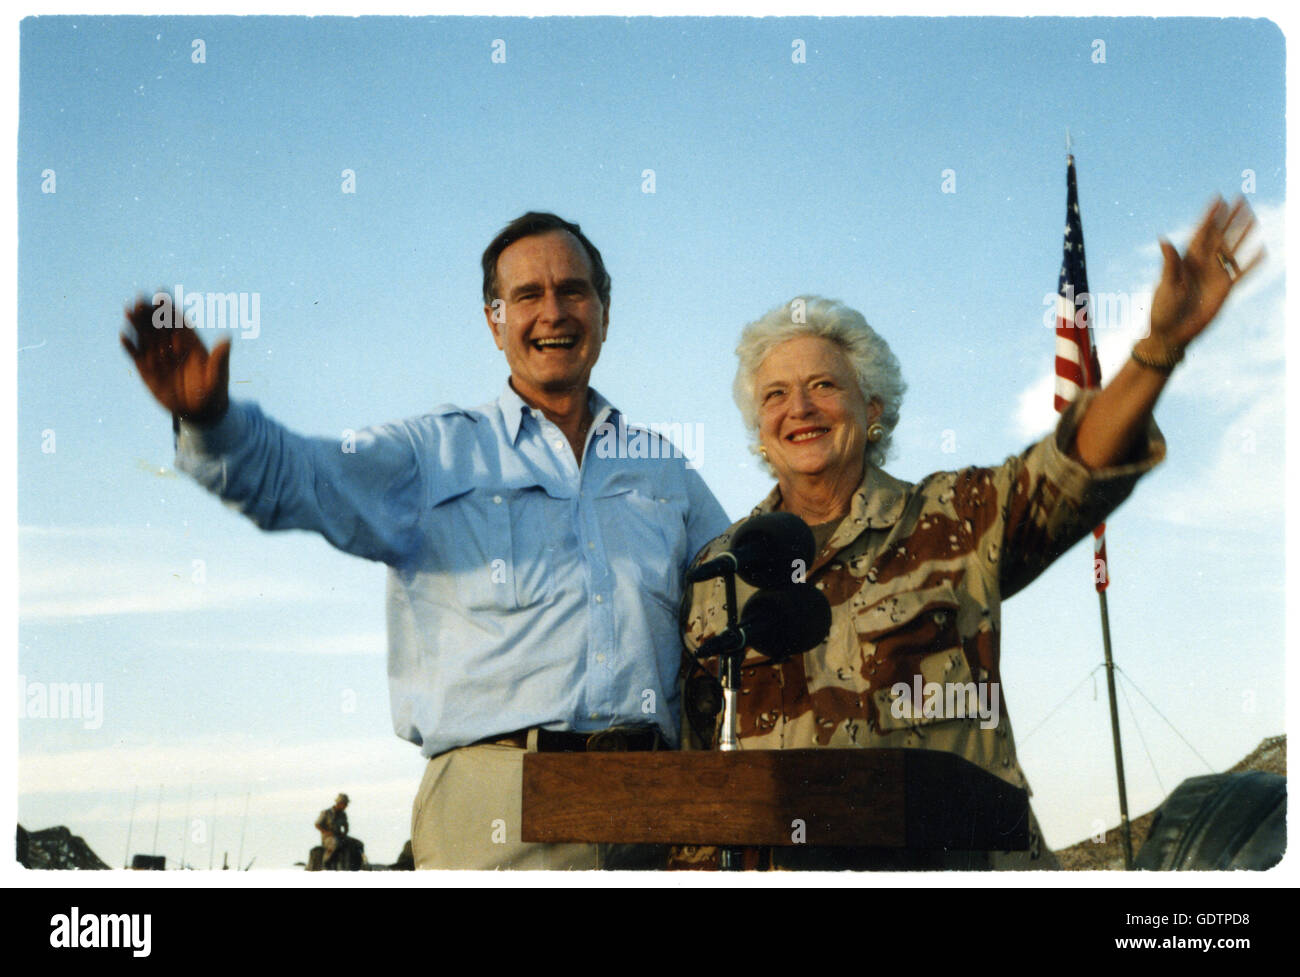 Le Président George Bush et la Première Dame Barbara Bush vague comme ils se tiennent à l'arrière d'un véhicule lors d'une visite à un campement dans le désert. Le président et son épouse sont à payer le jour d'action de grâce des visites de soldats américains qui sont en Arabie Saoudite pour l'opération Bouclier du désert. Banque D'Images